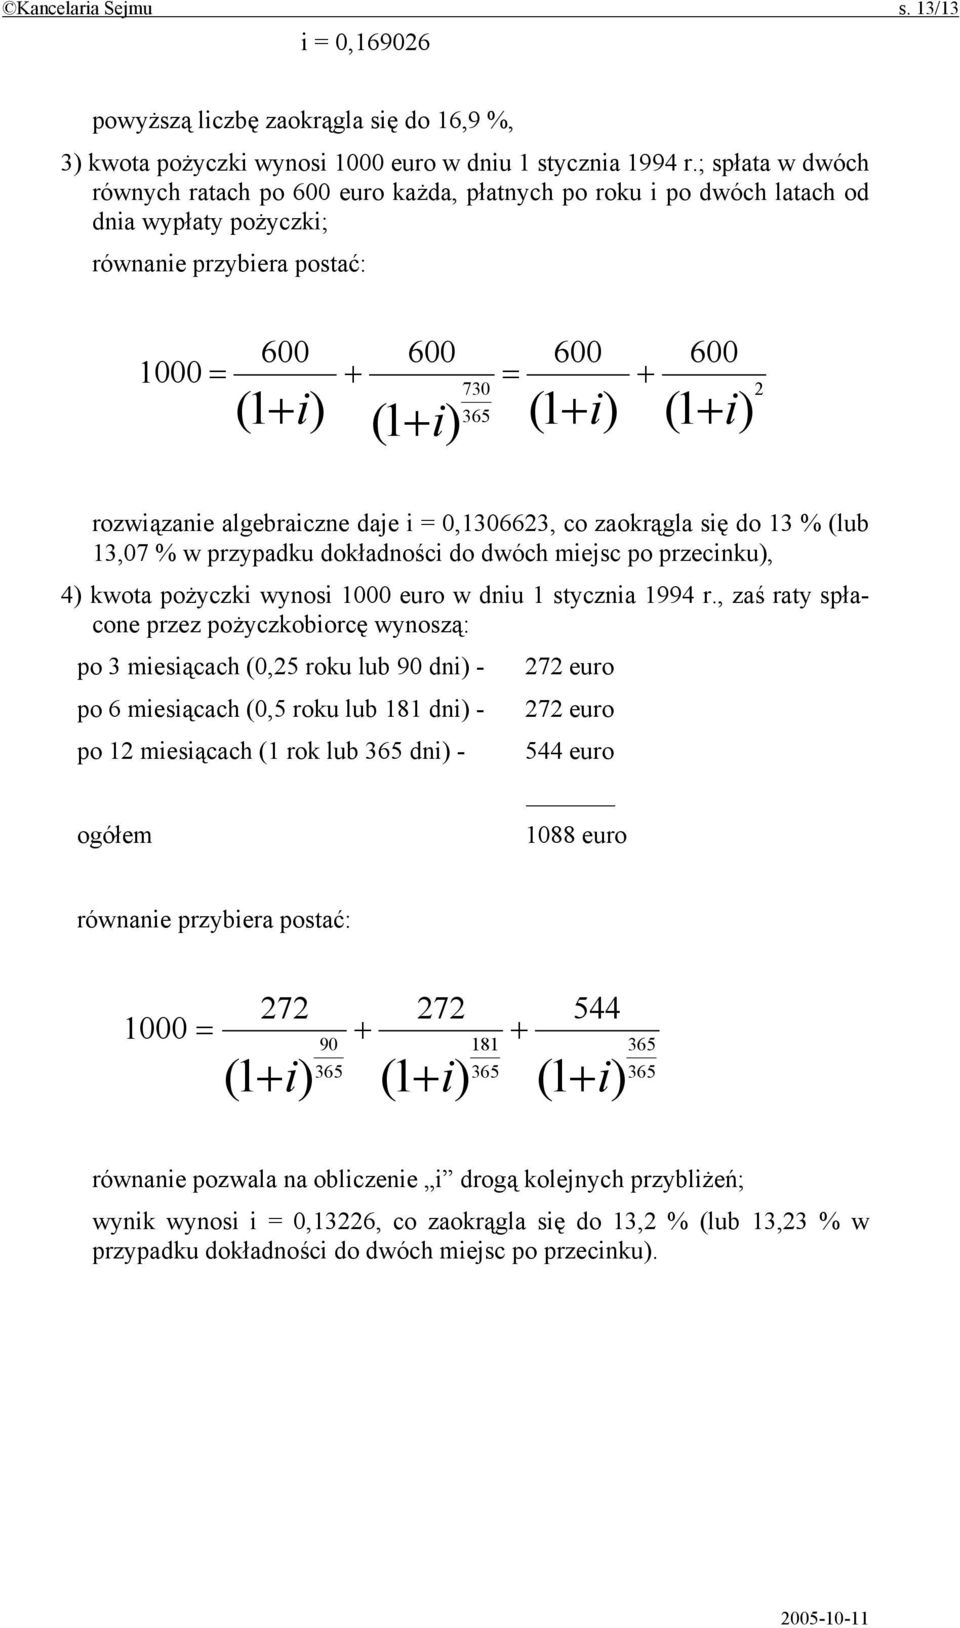 + 2 rozwiązanie algebraiczne daje i = 0,1306623, co zaokrągla się do 13 % (lub 13,07 % w przypadku dokładności do dwóch miejsc po przecinku), 4) kwota pożyczki wynosi 1000 euro w dniu 1 stycznia 1994